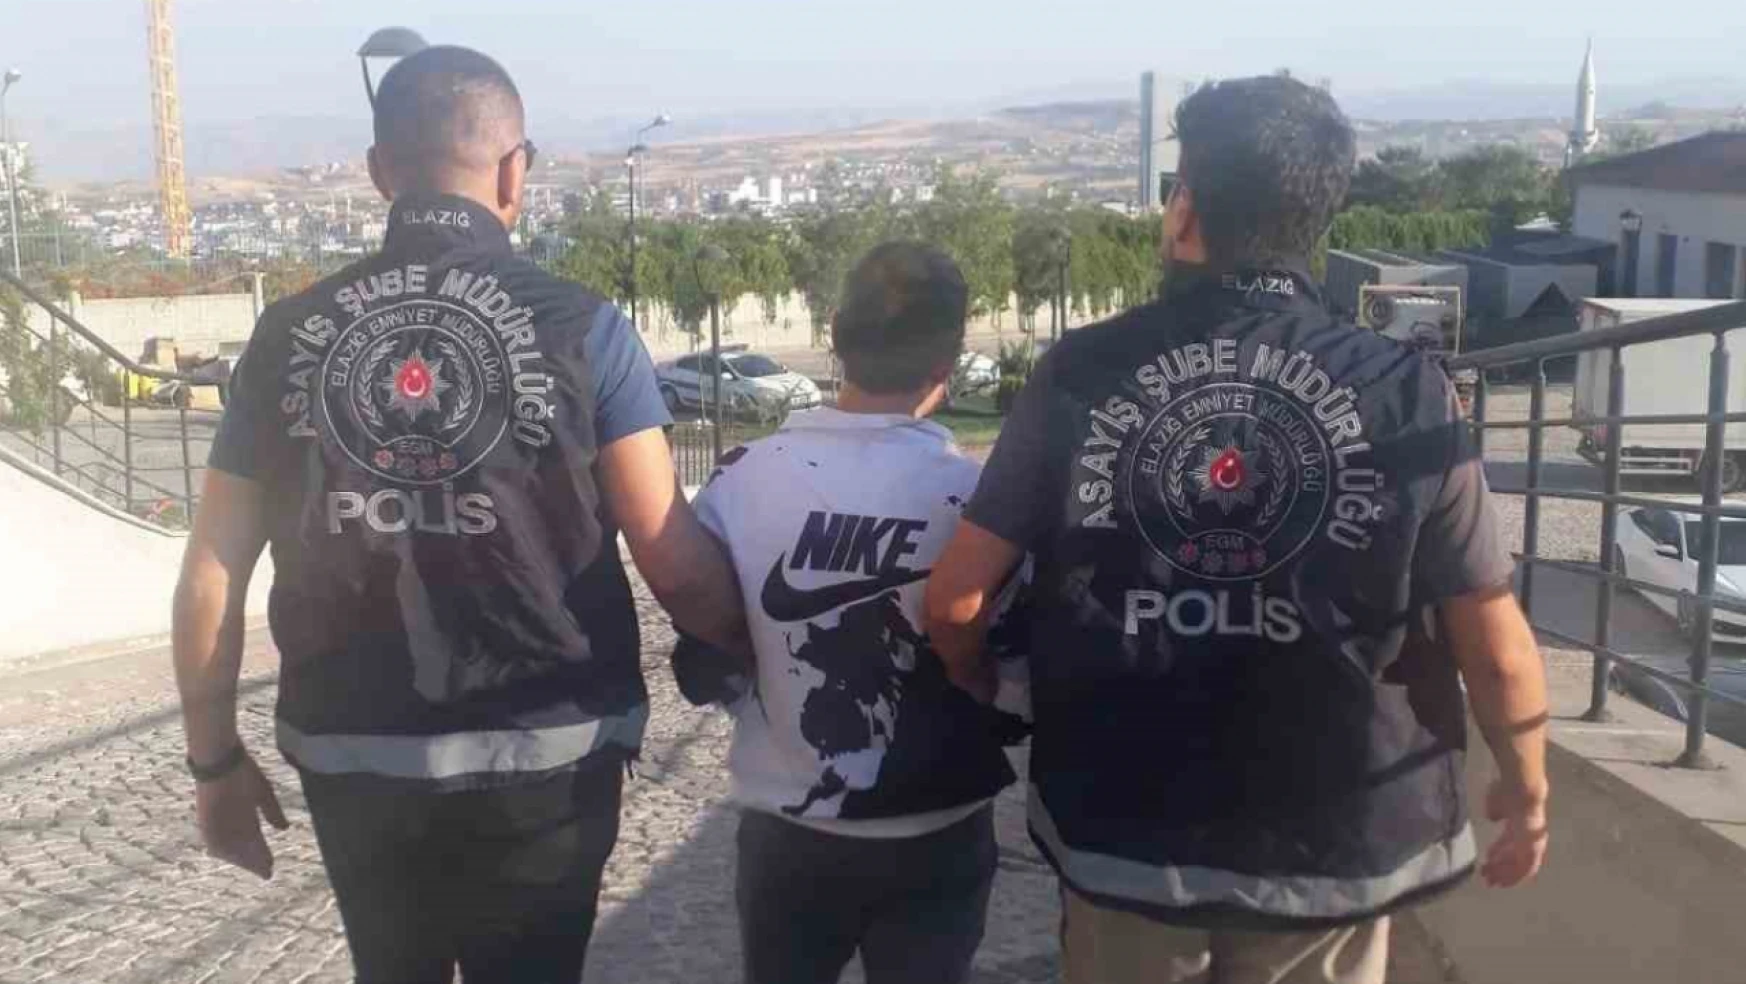 Elazığ'da 22 yıl kesinleşmiş hapis cezası bulunan şahıs yakalandı